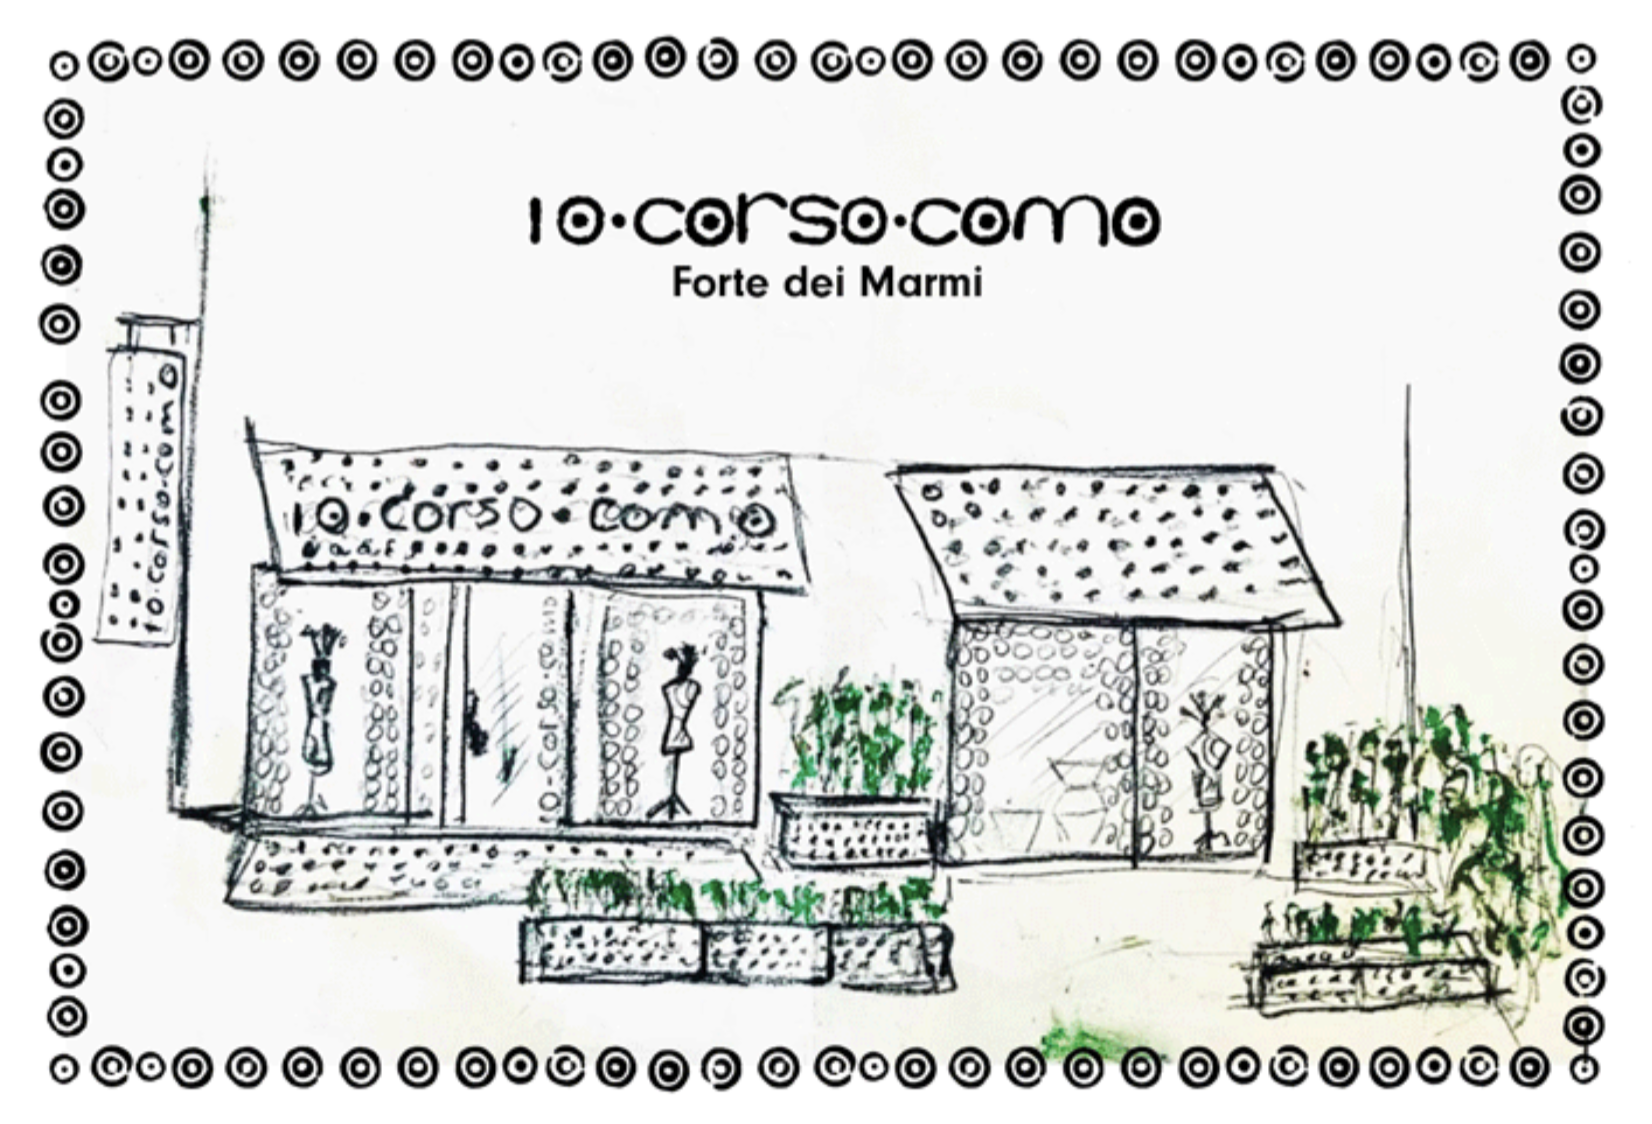 意大利传奇买手店 10 Corso Como在托斯卡纳度假胜地马尔米堡开设新快闪店